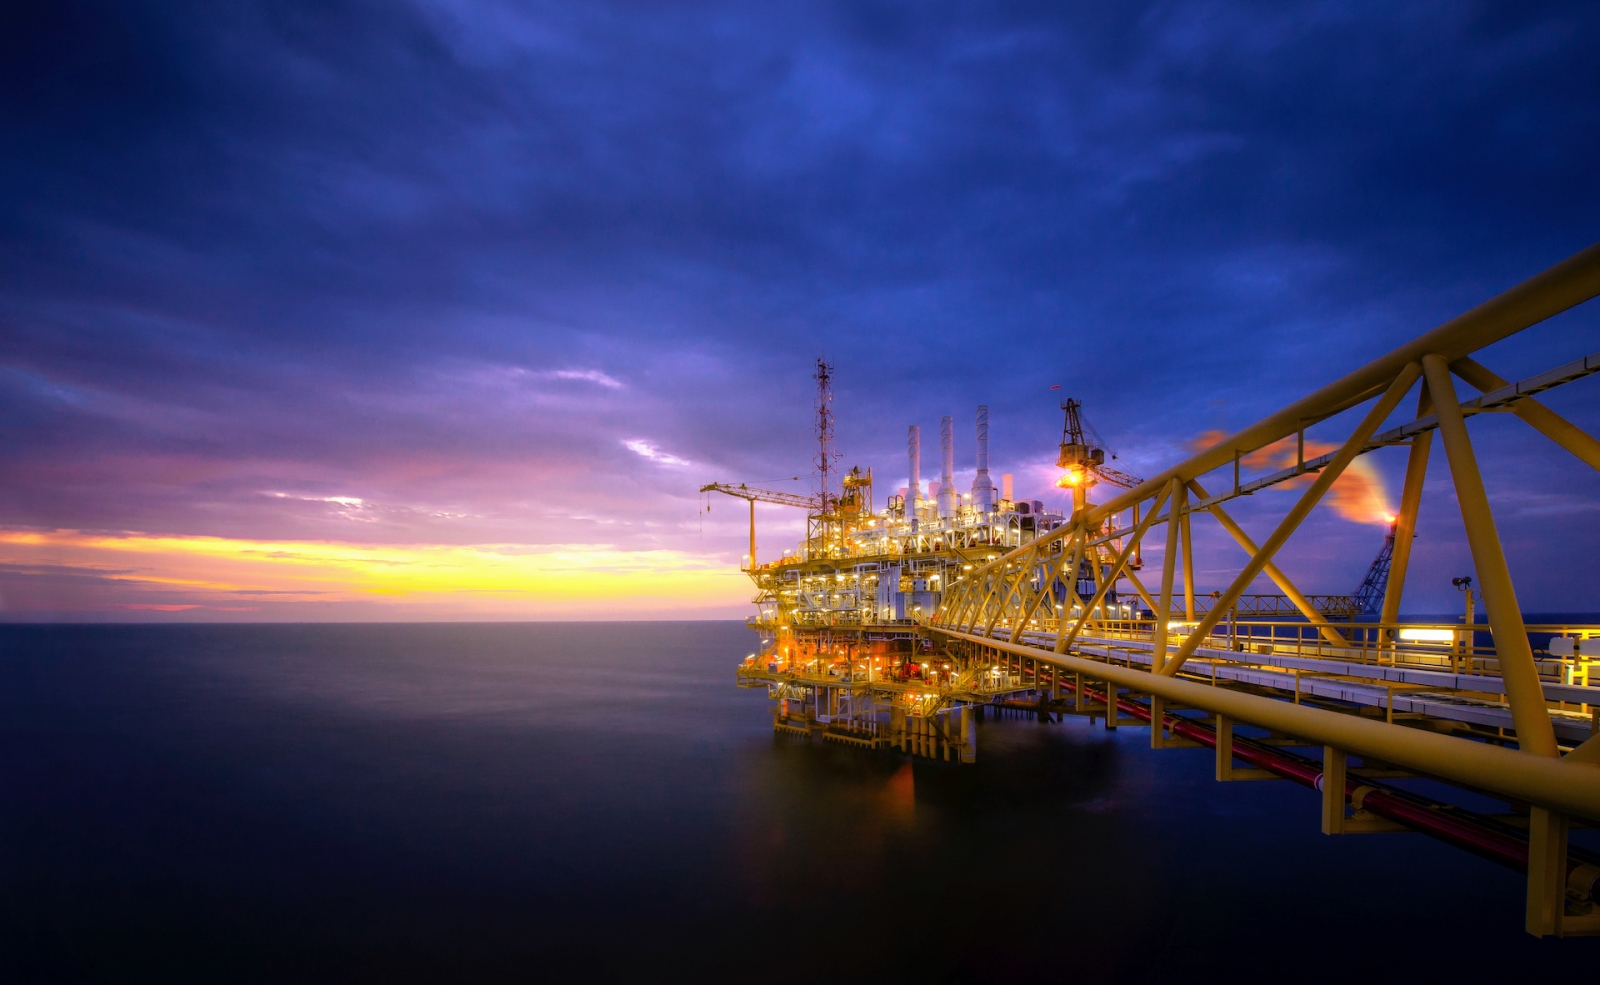 Промышленность морской нефтяной буровой установки в заливе после захода солнца